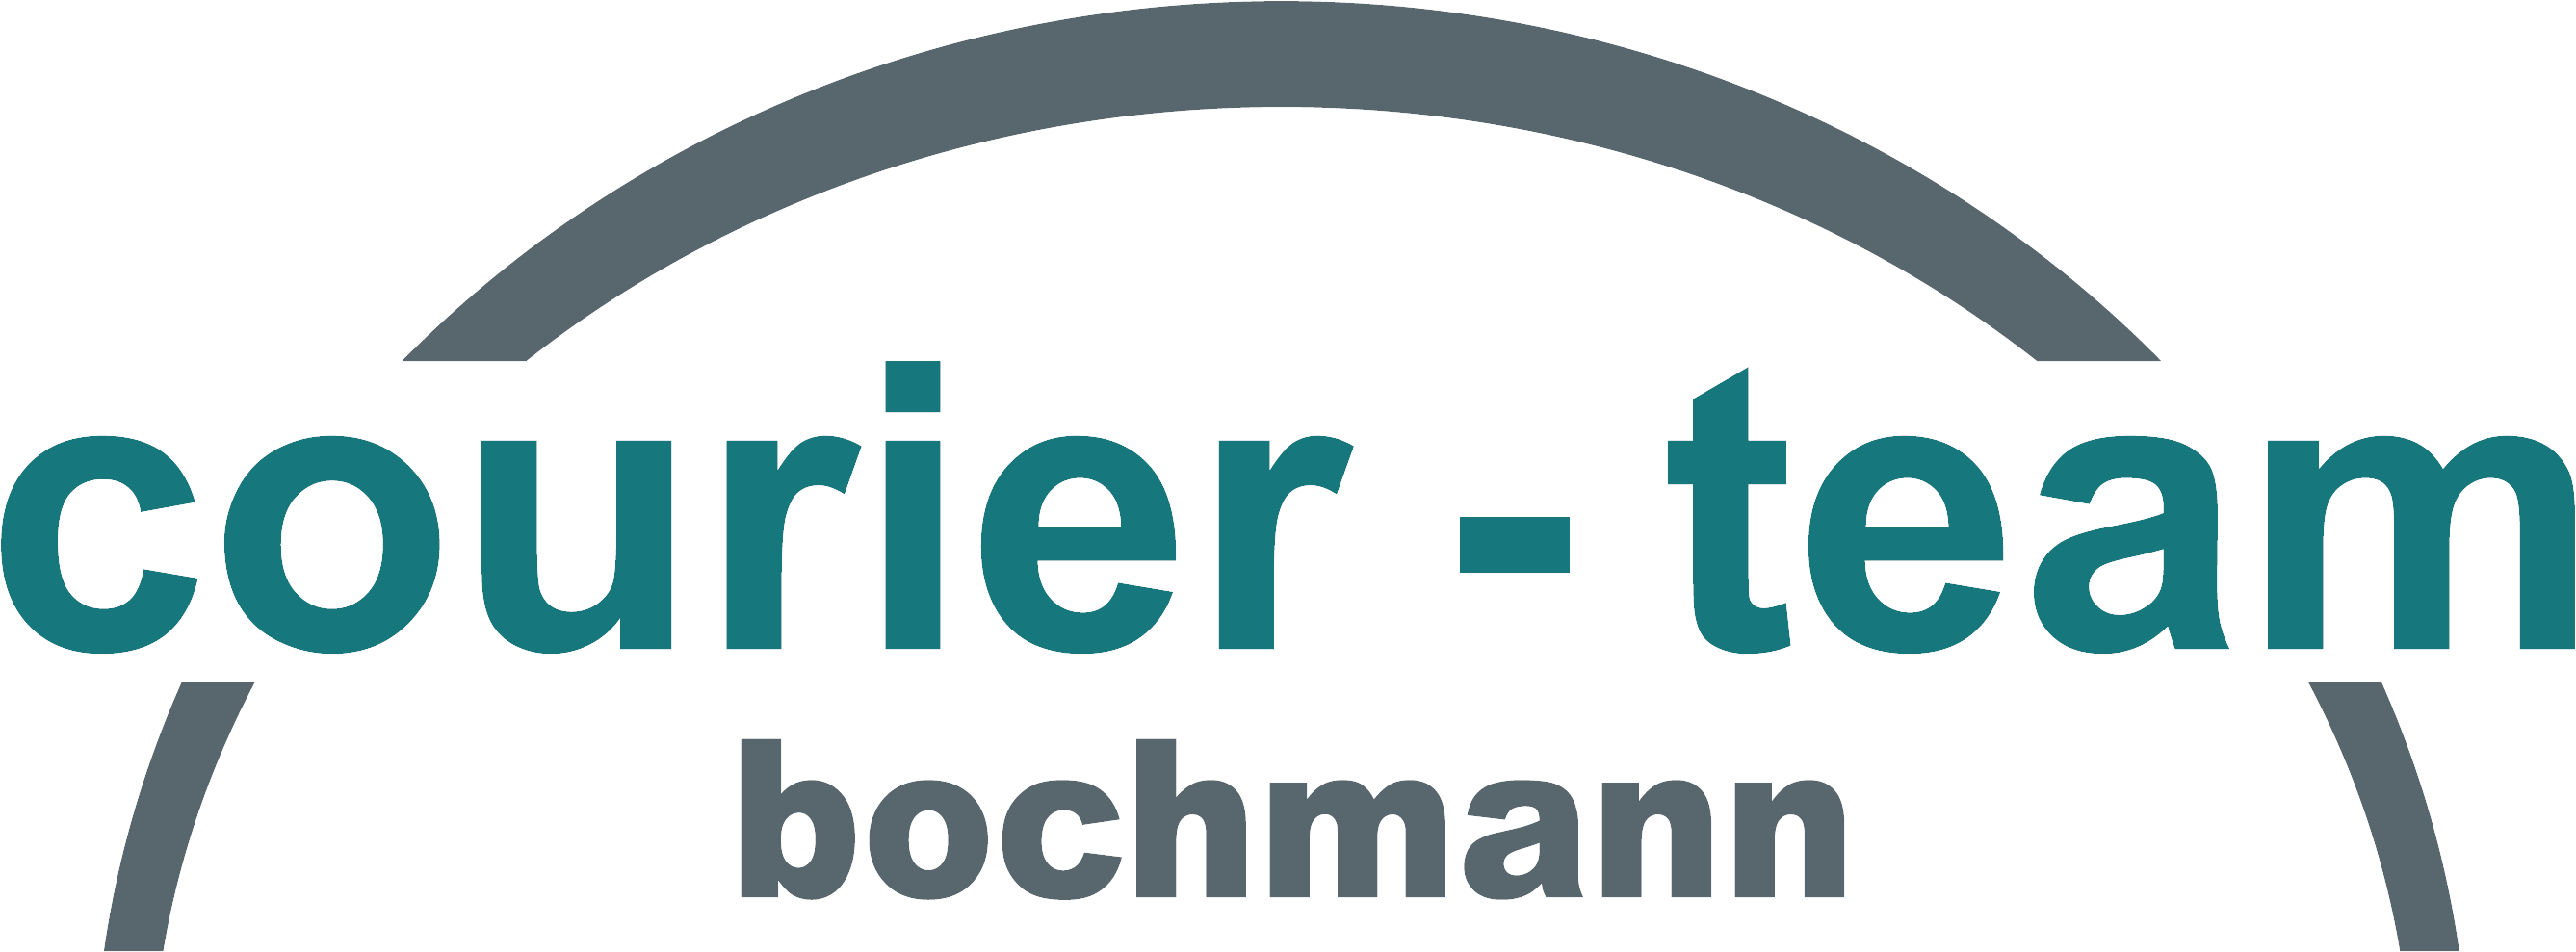 Courier-Team Bochmann – Europaweite Direkt- und Eiltransporte